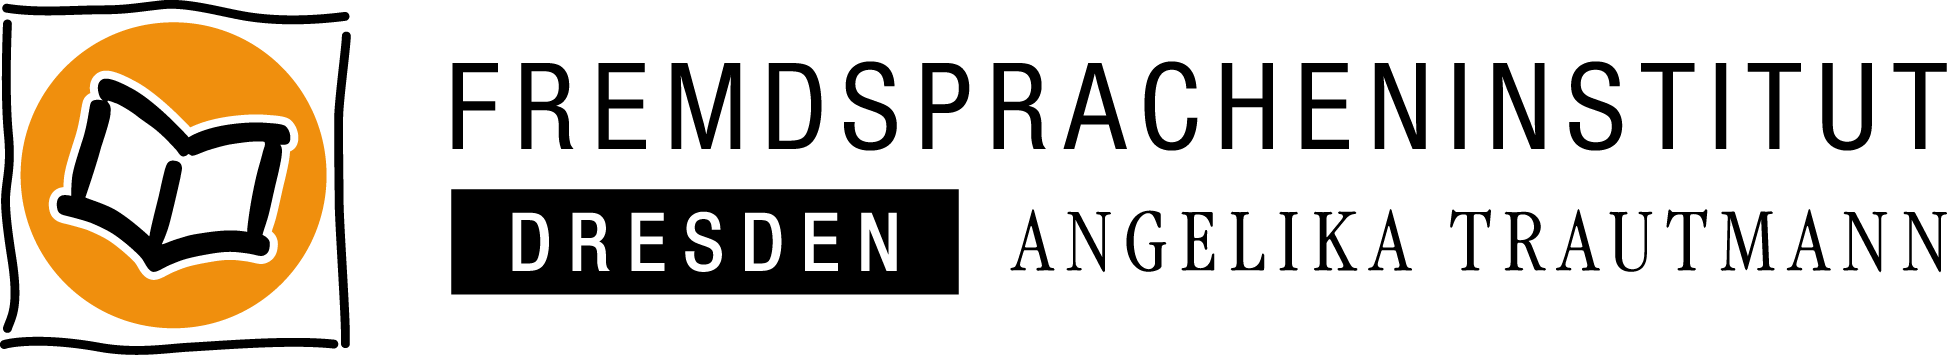 Logo der TJWeb GmbH